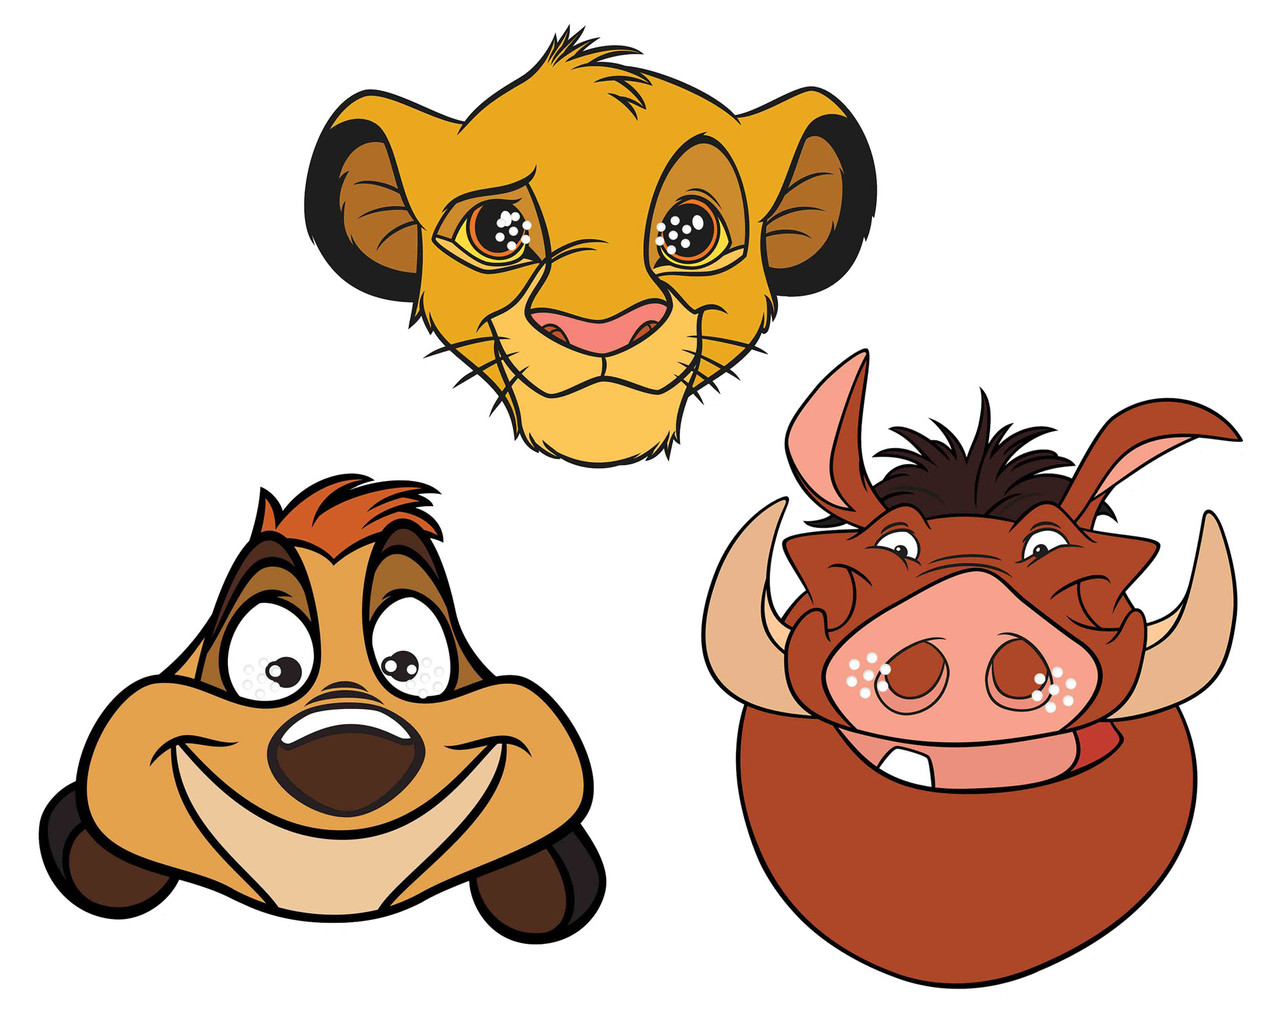 Disney, Le roi lion - Figurine Scar, Pumbaa, Simba & Timon ou Banzai,  Shenzi & Ed, Fluffy Puffy